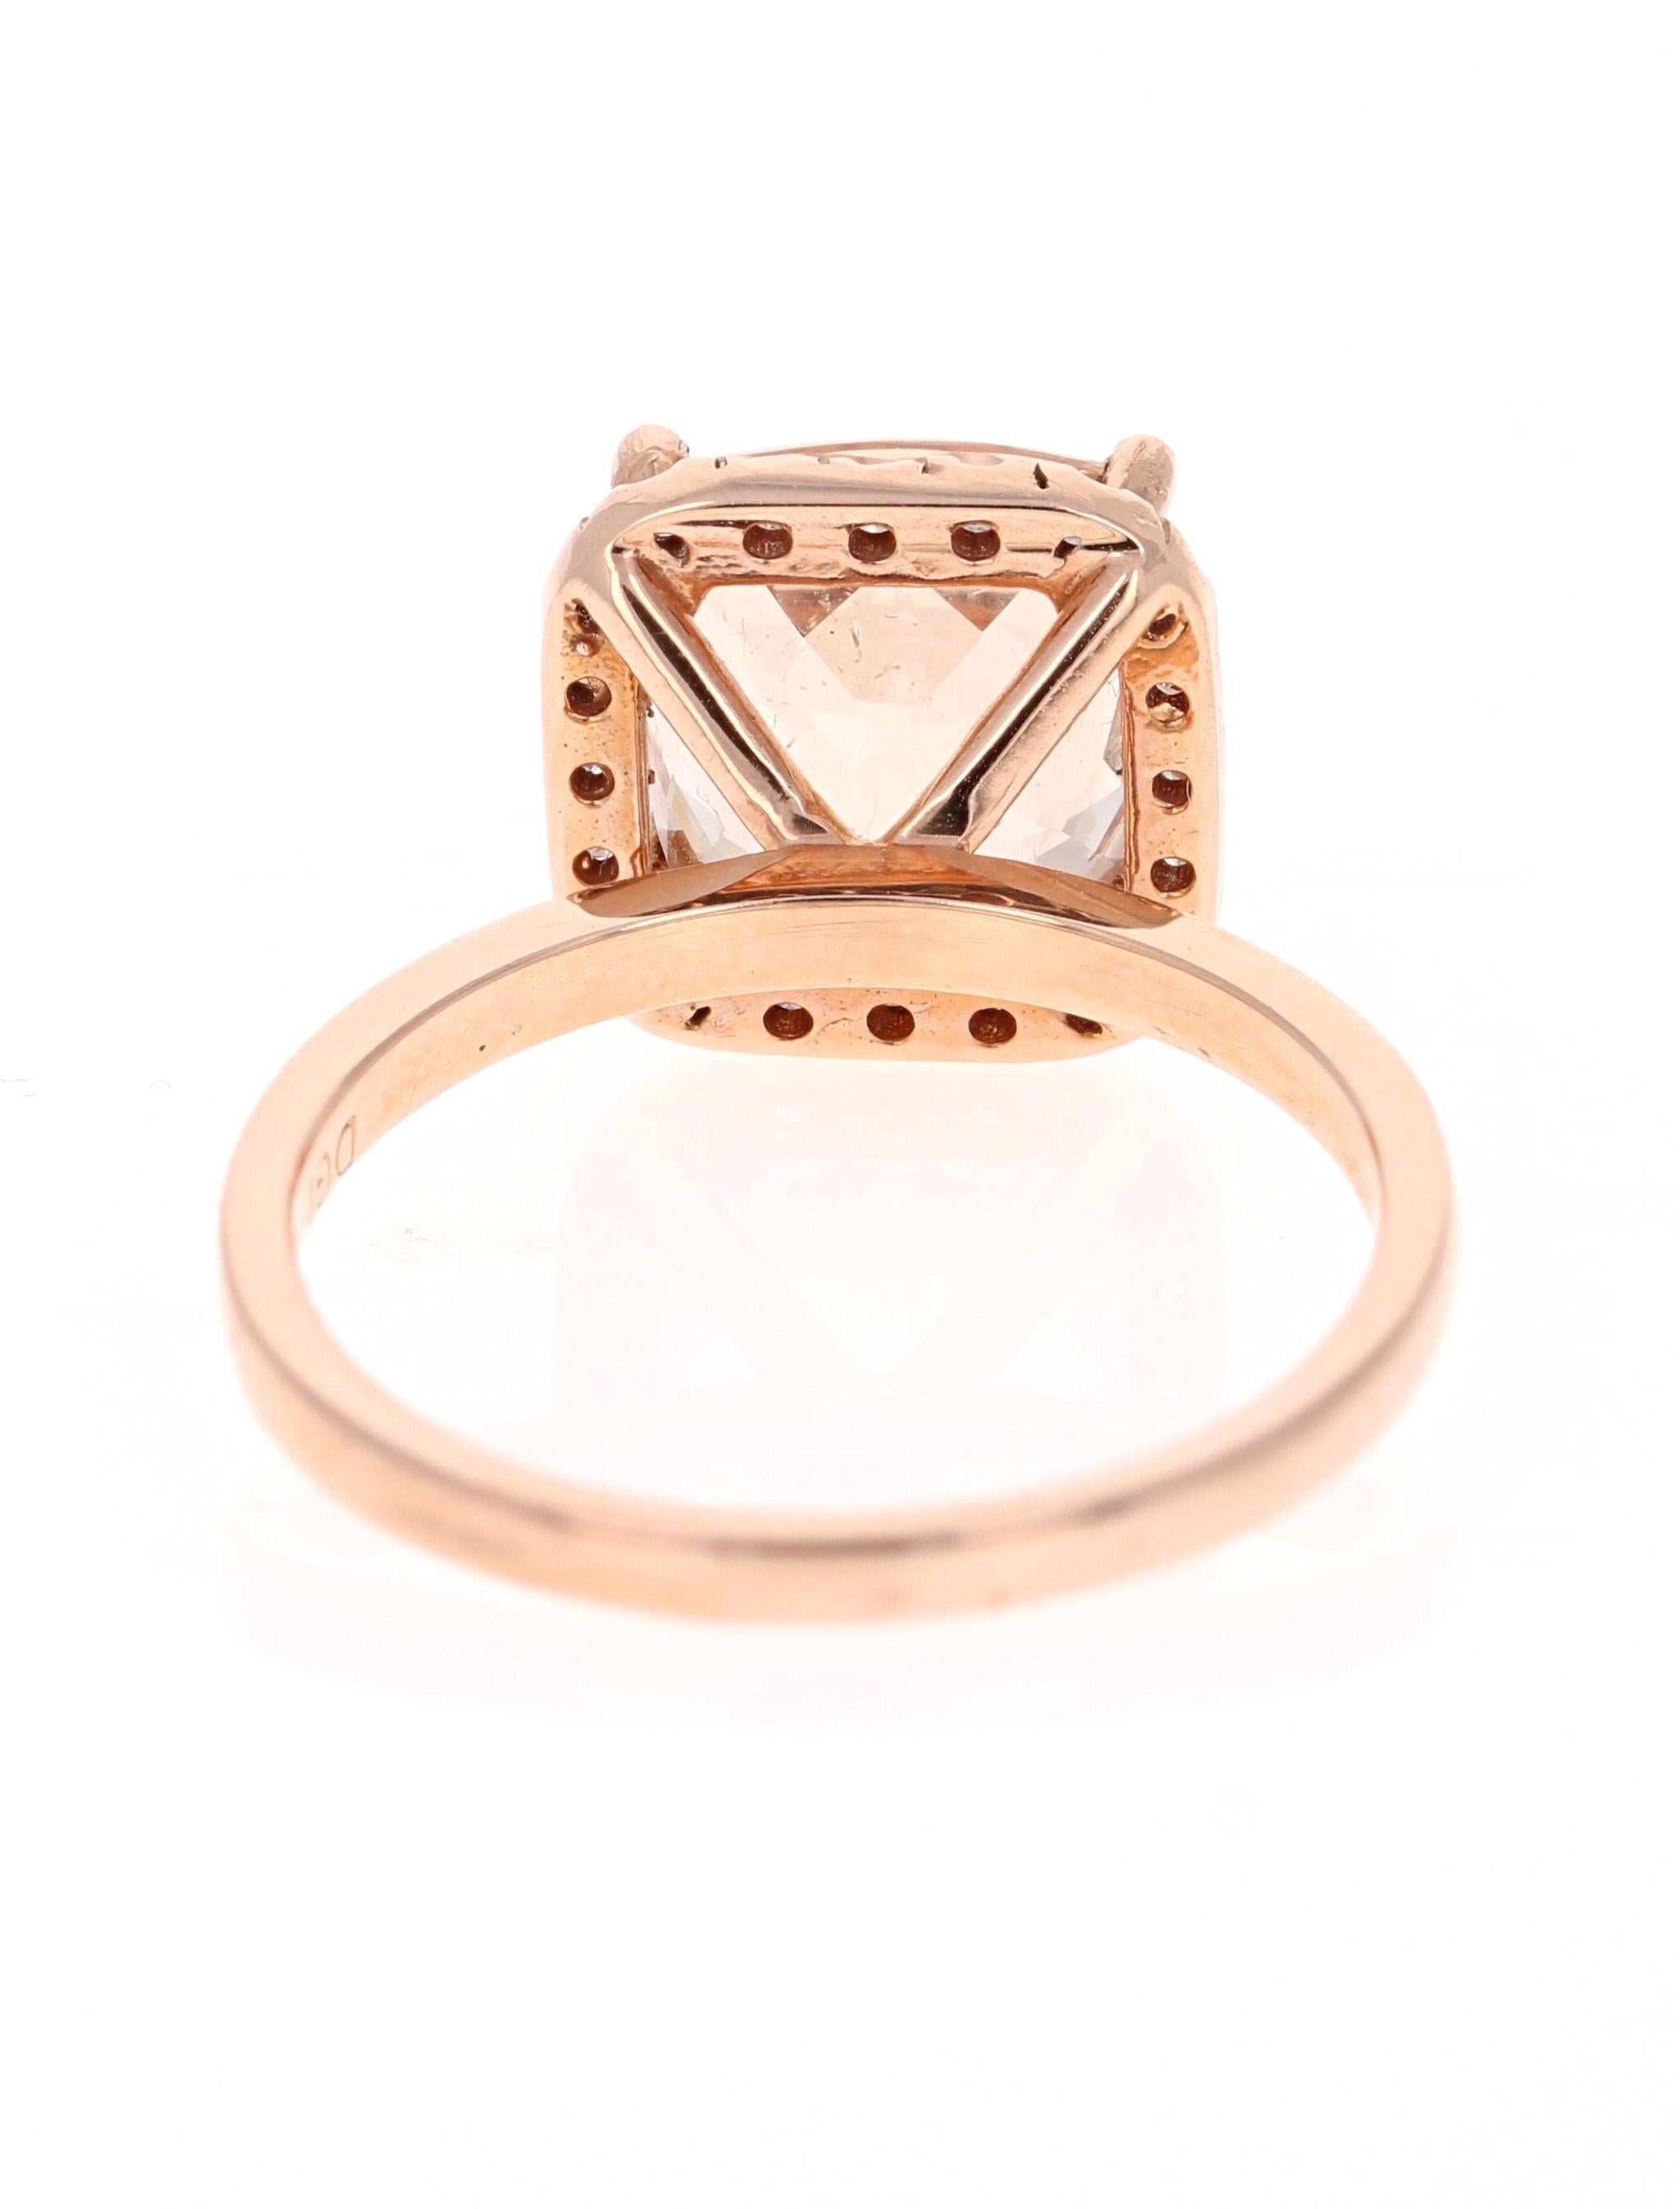 Cushion Cut 4.09 Carat Morganite Diamond 14 Karat Rose Gold Engagement Ring